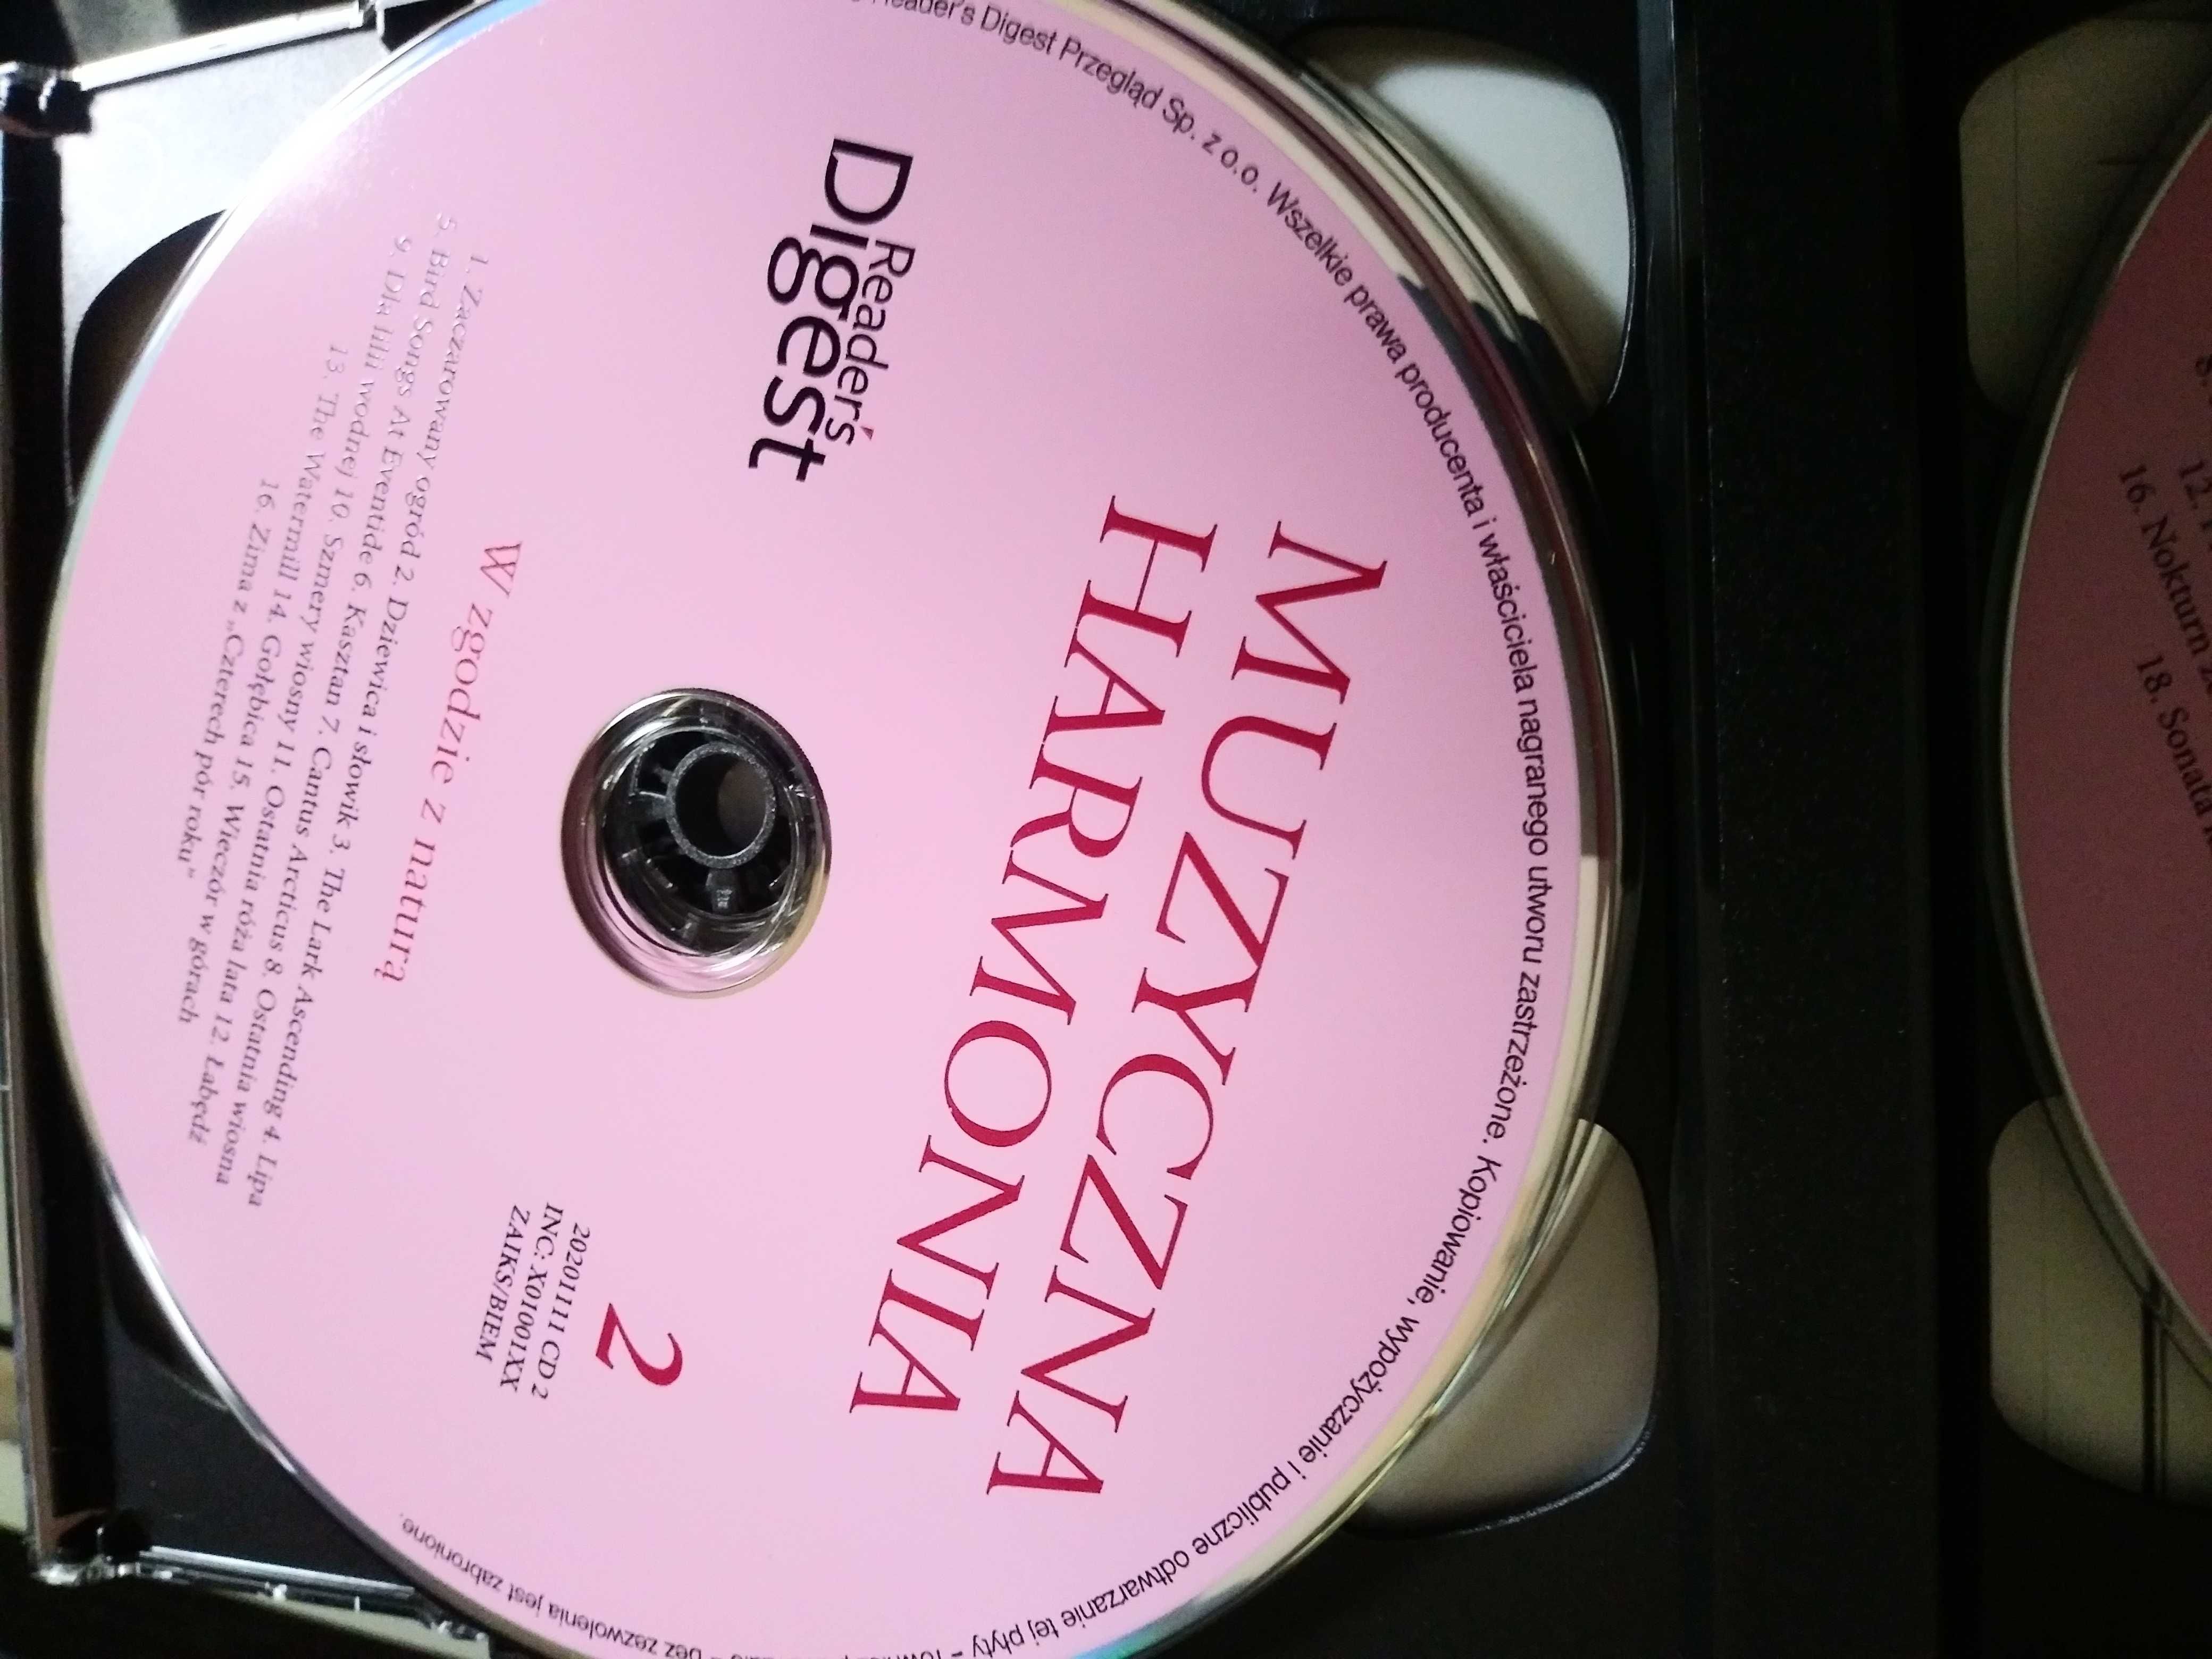 płyta cd muzyczna harmonia